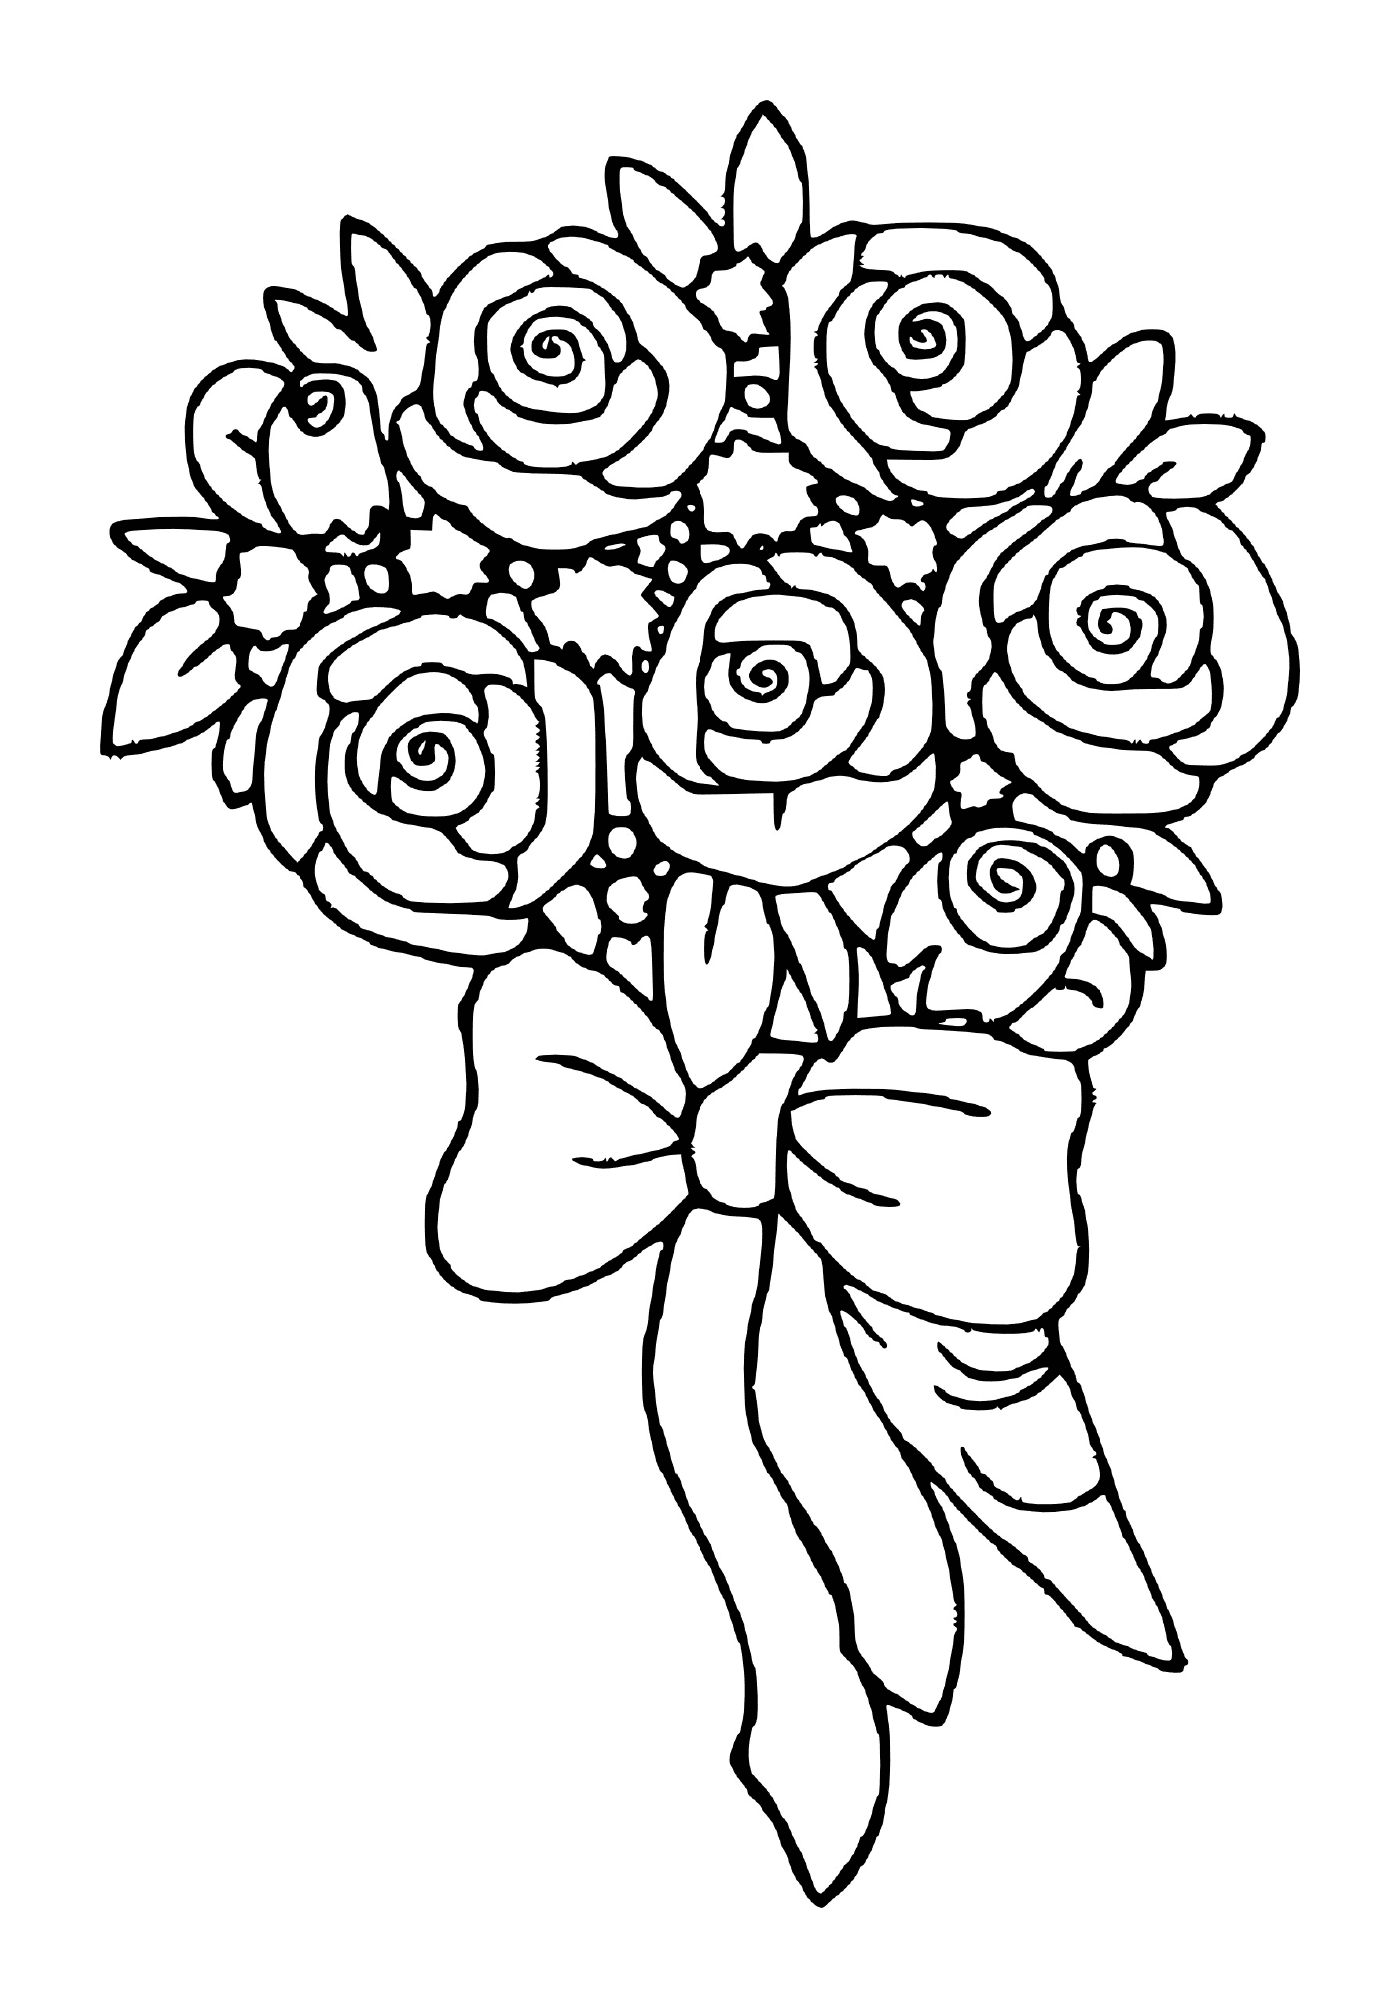 bouquet de fleurs rose